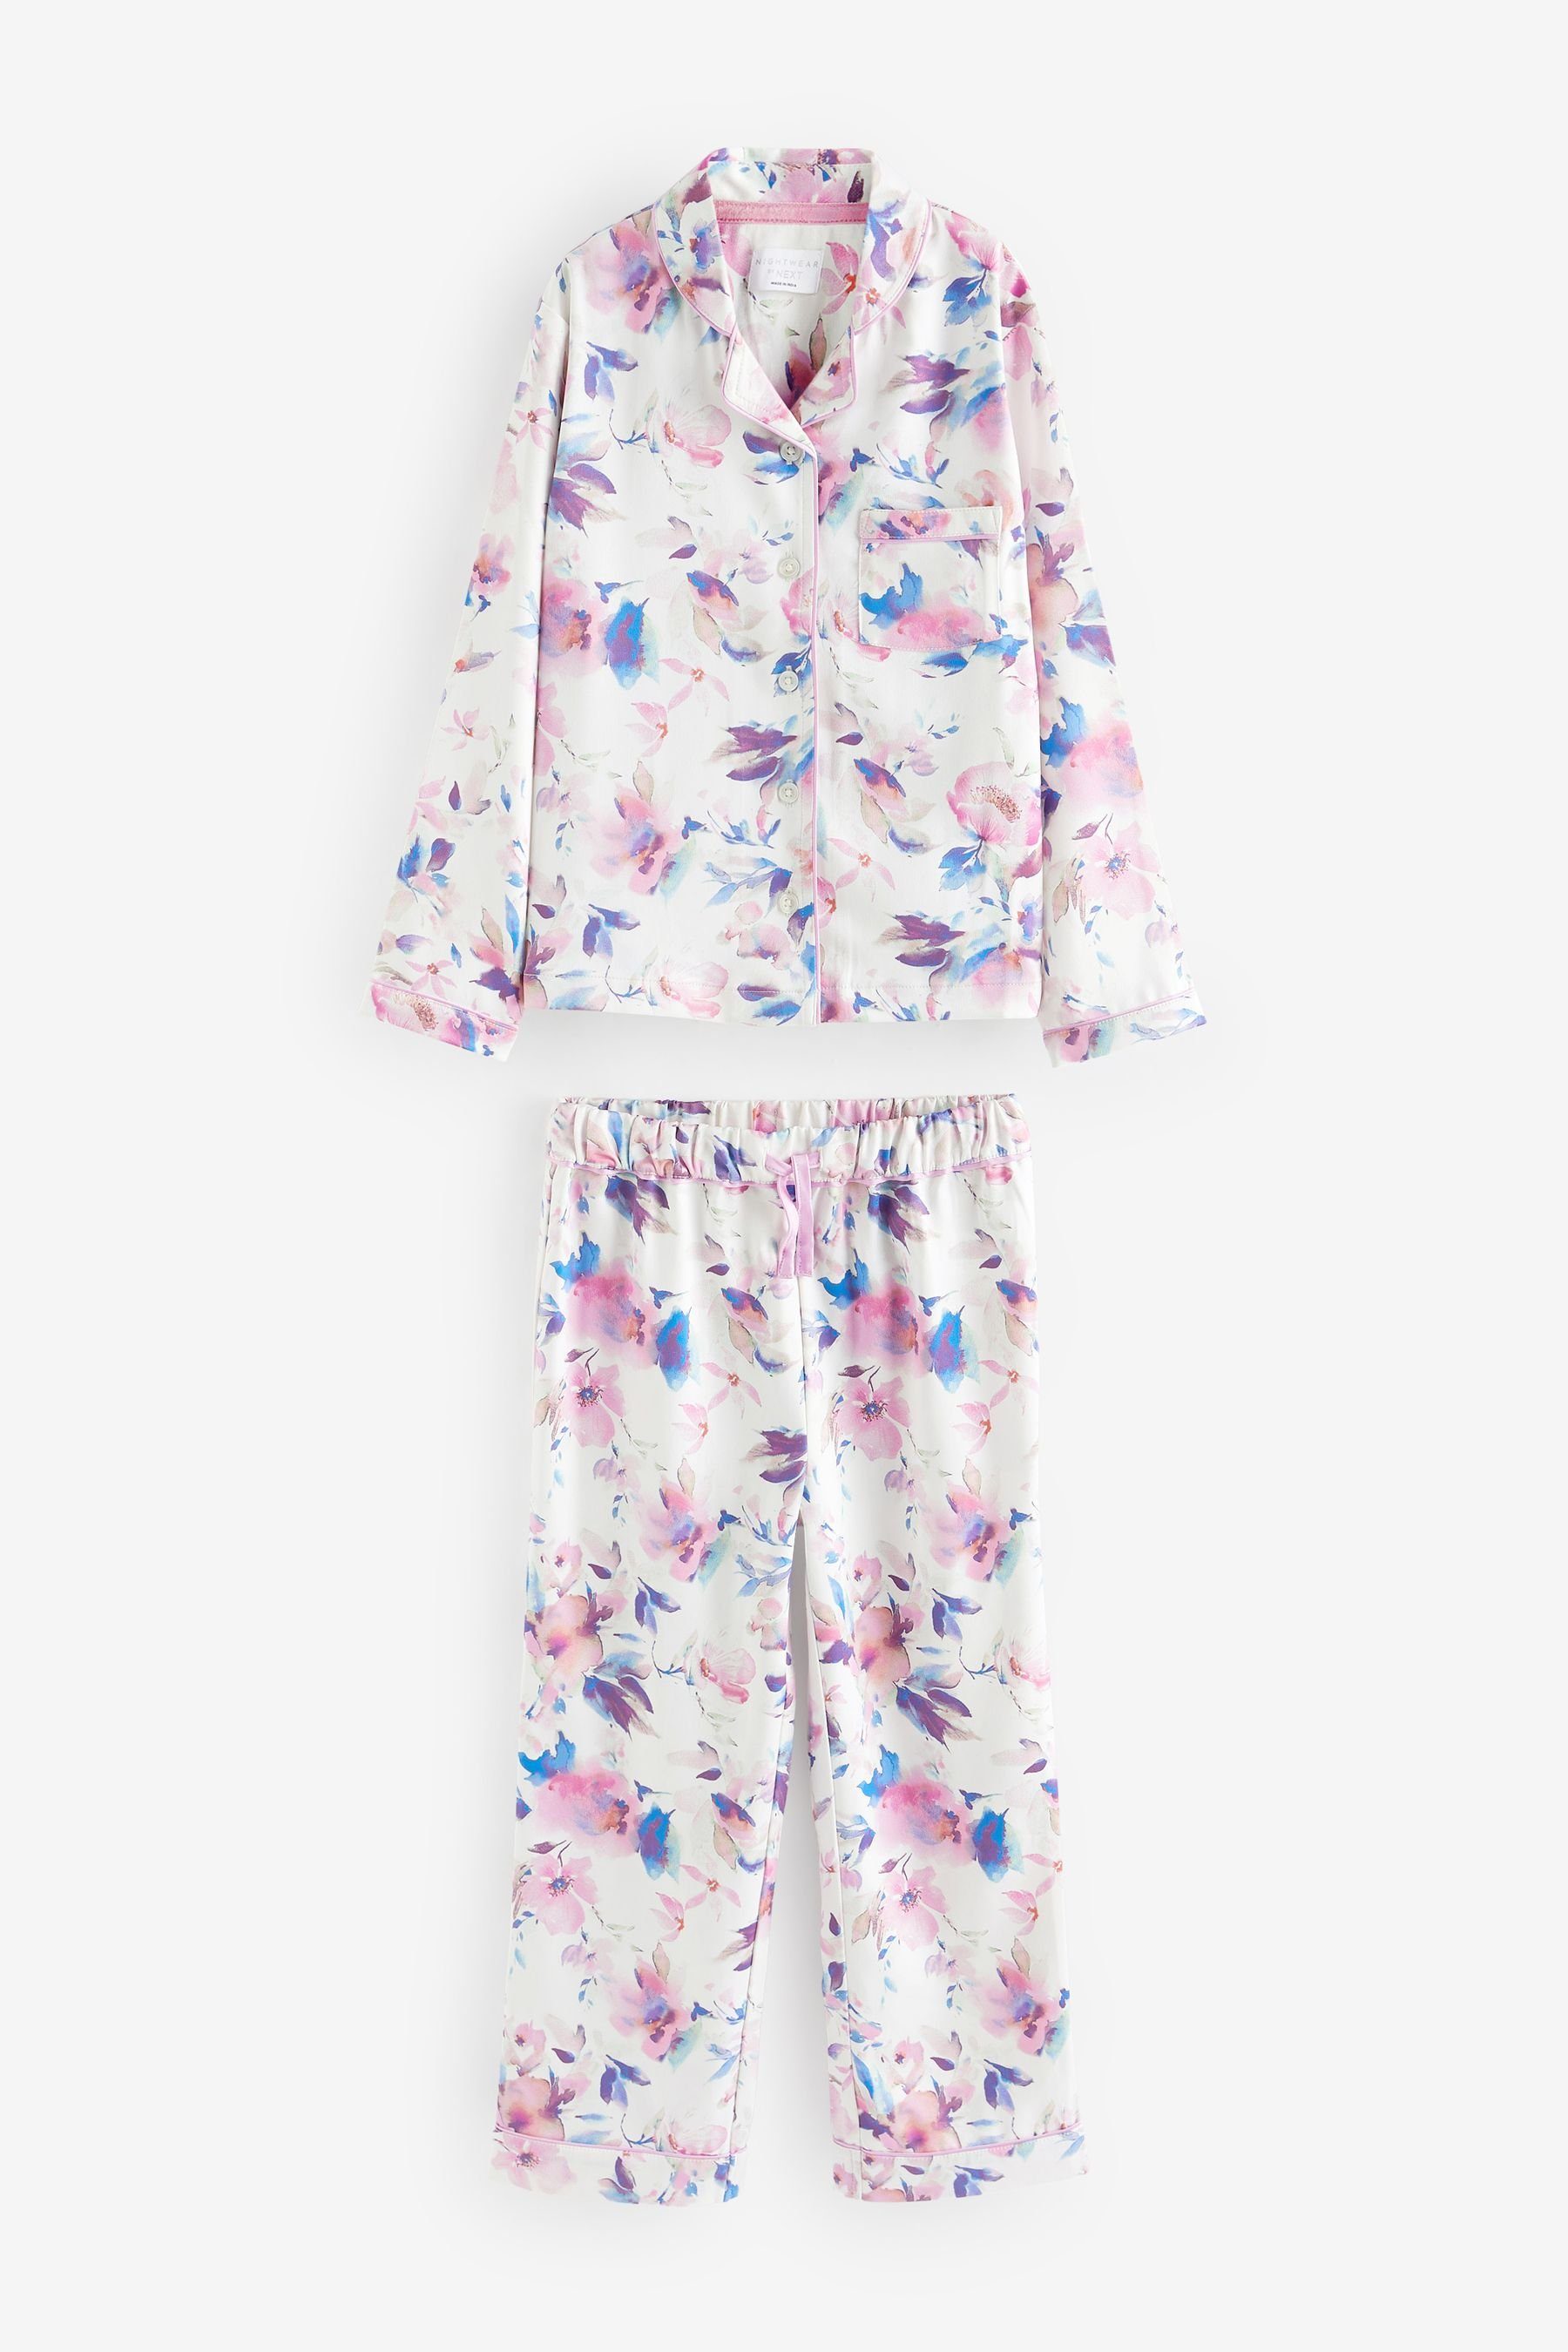 geknöpfter White Floral aus Satin tlg) Pyjama Schlafanzug Durchgehend Next (2